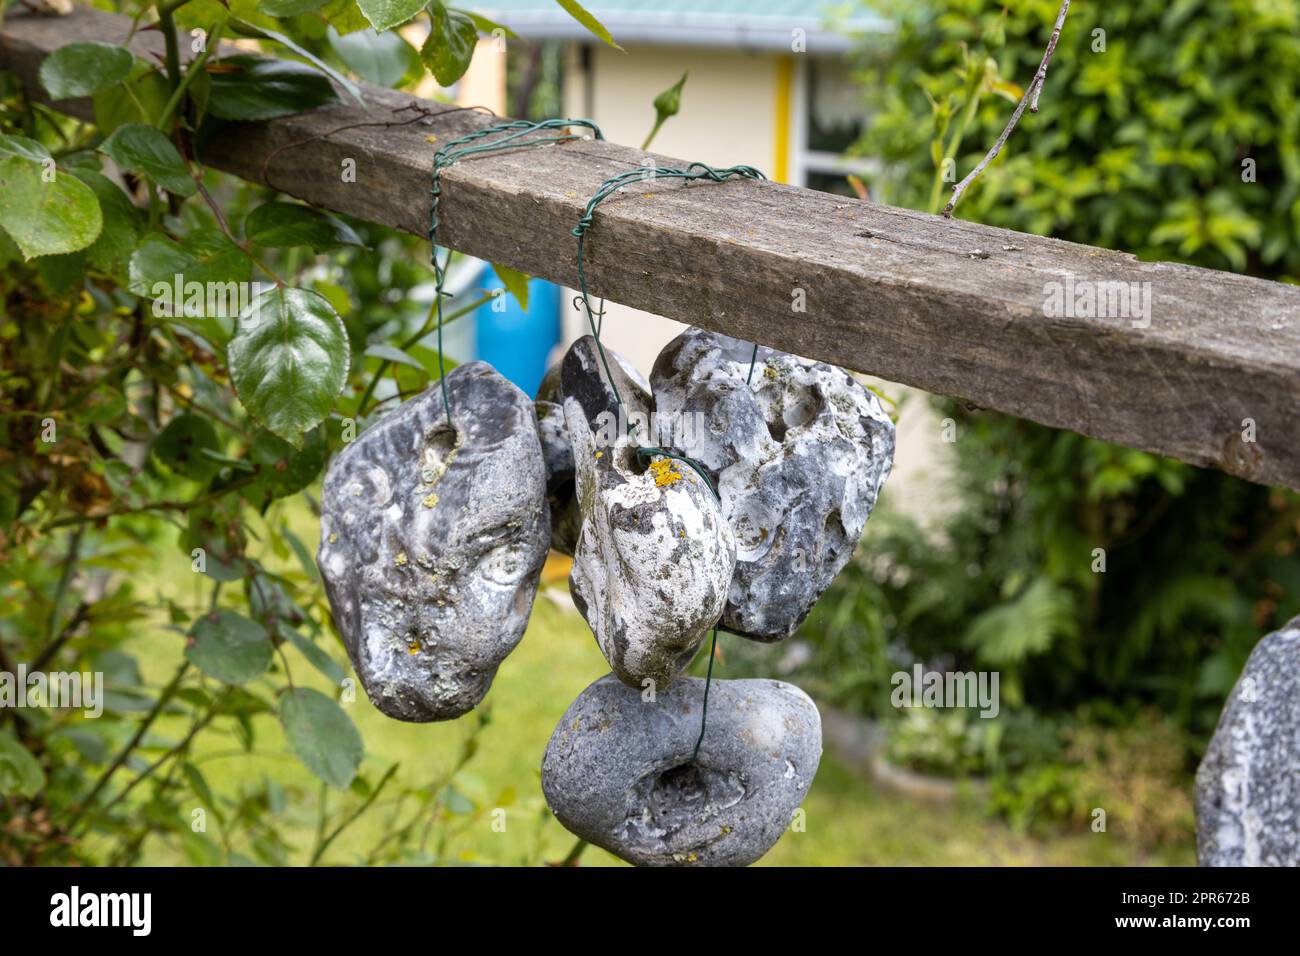 Steine oder Hühnergötter hängen an einem Seil im Freien Stockfoto